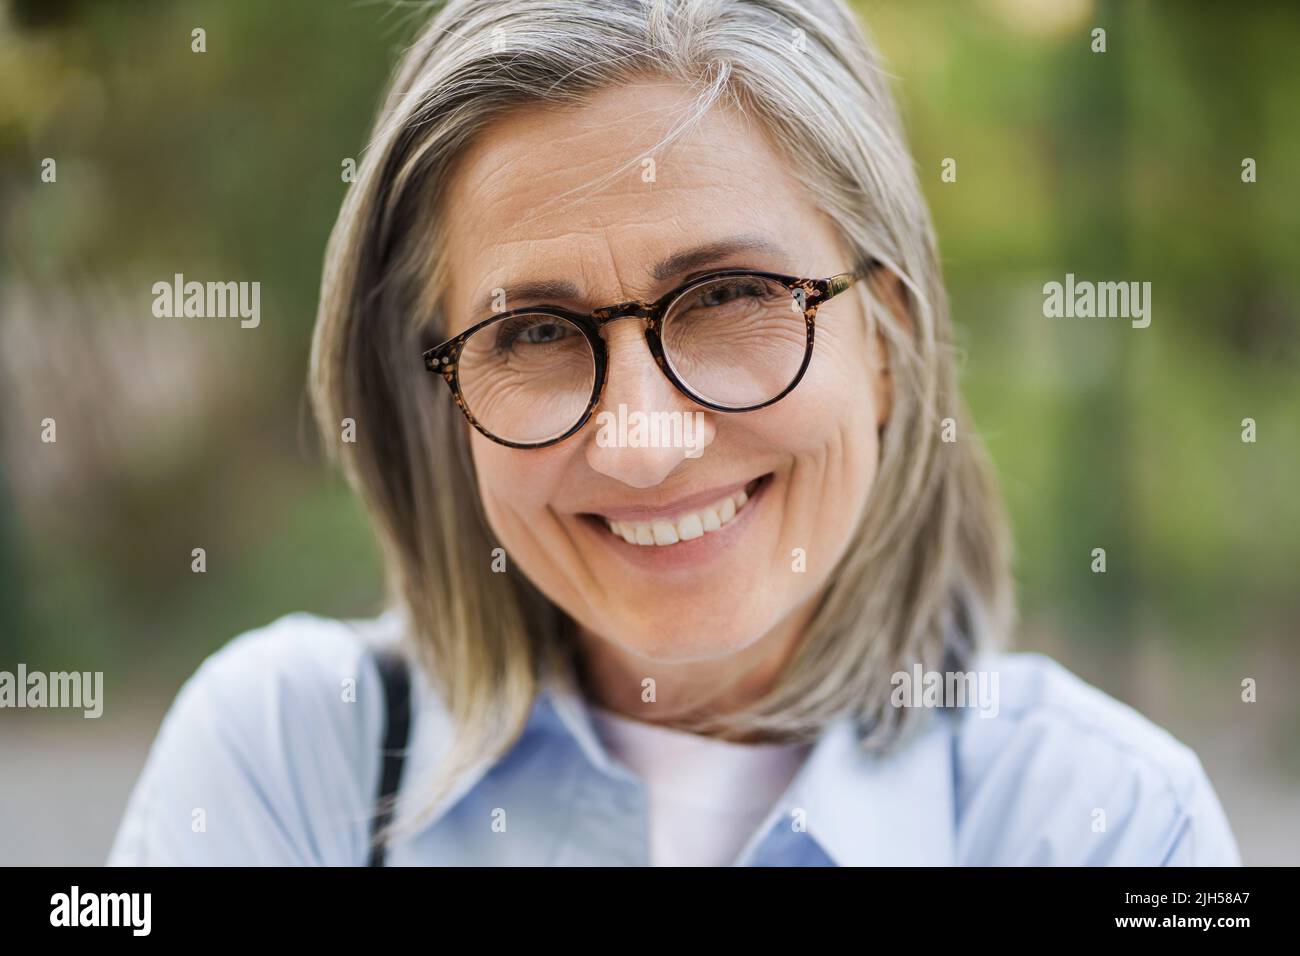 Nahaufnahme Porträt von charmanten grauen Haaren reife Frau in Brille im Freien stehend genießen Freizeit Urlaub rund um die Welt im Ruhestand reisen. Reife Frau mit perfekter Haut trägt blaues Hemd. Stockfoto